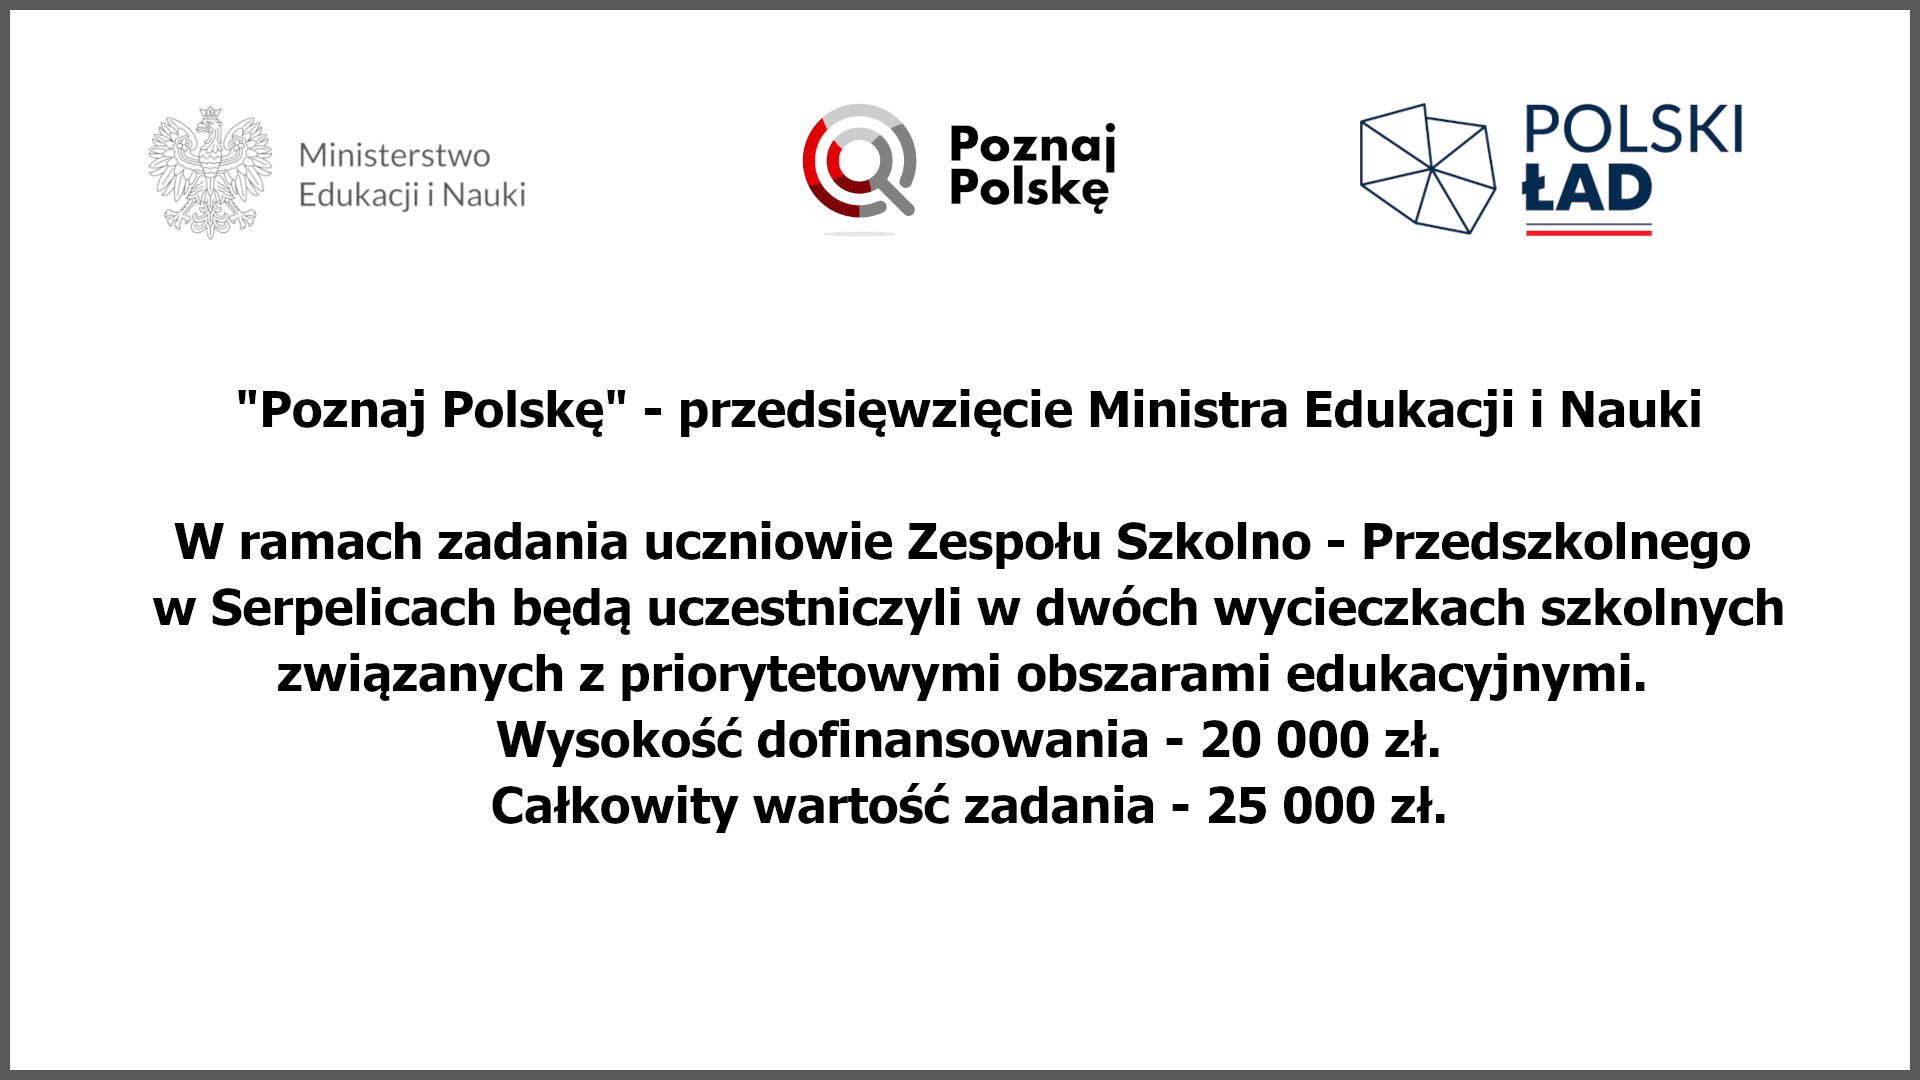 Informacja - tablica projekt "Poznaj Polskę"